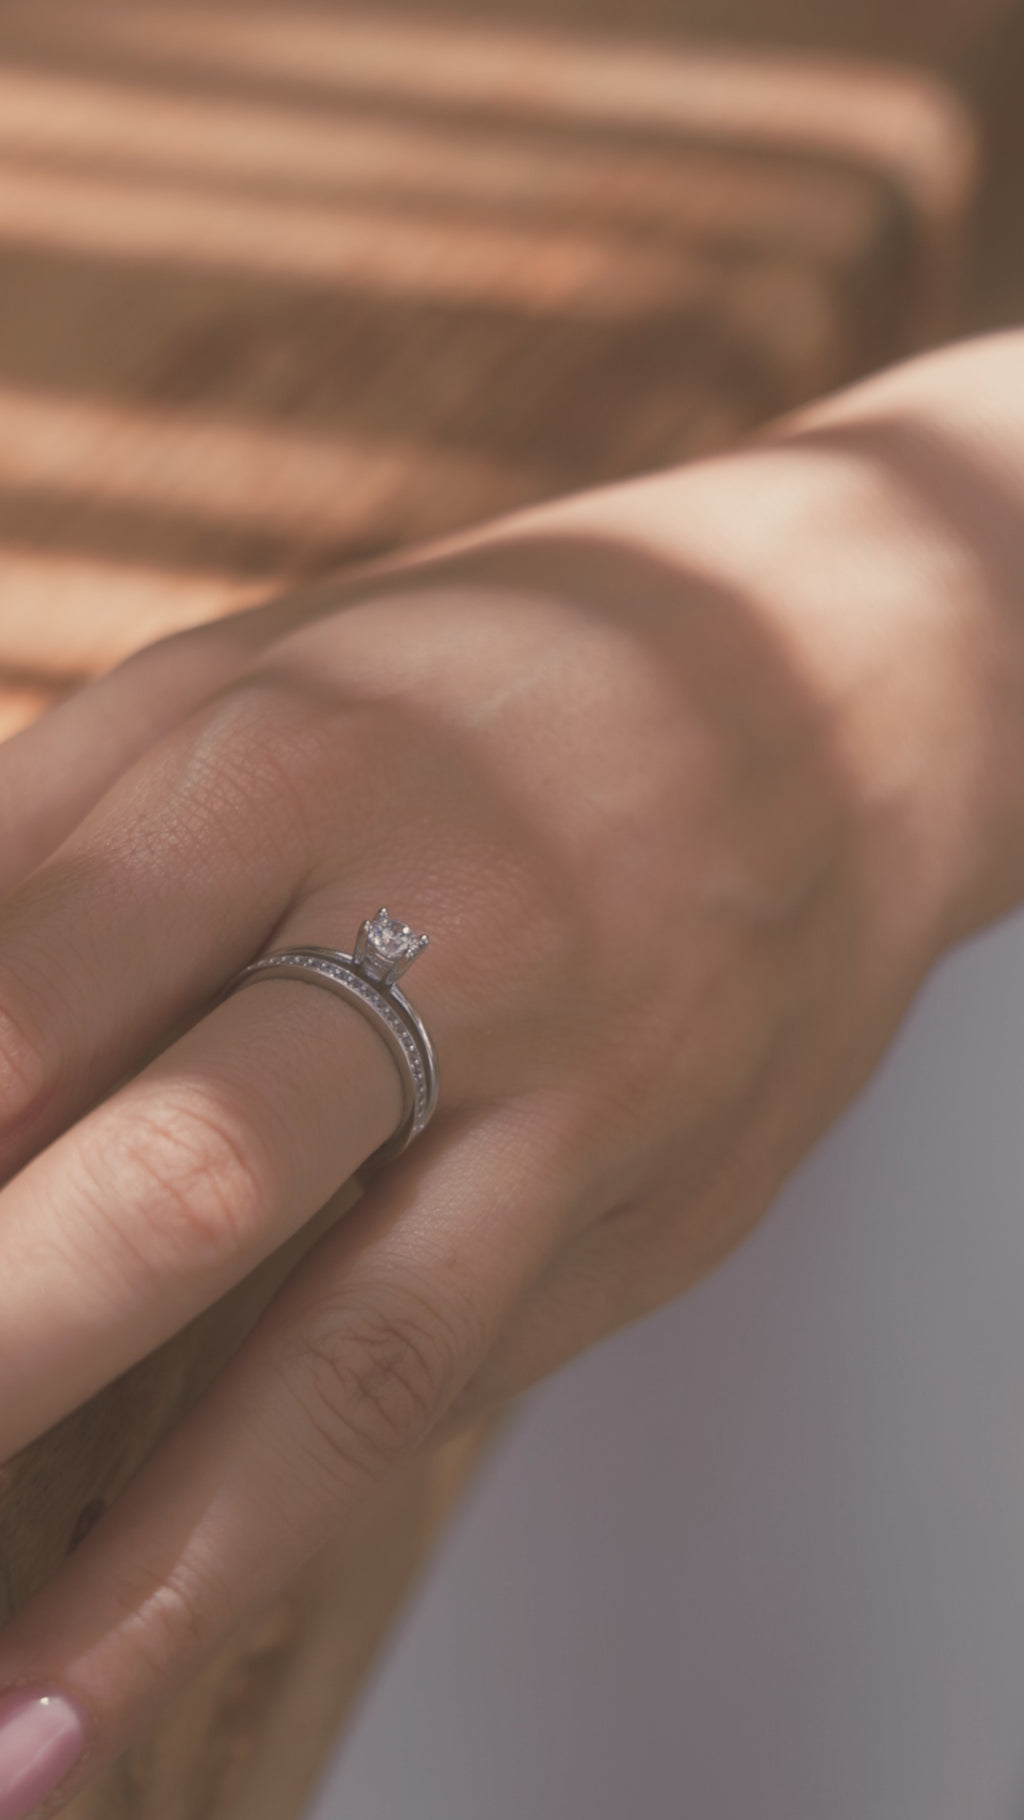 Μονόπετρο δαχτυλίδι γάμου με διαμάντι, που συνδυάζει ένα δαχτυλίδι σειρέ με διαμάντια δίνοντας την αίσθηση διπλού δαχτυλιδιού, κατασκευασμένο από λευκόχρυσο, φορεμένο σε γυναικείο χέρι.